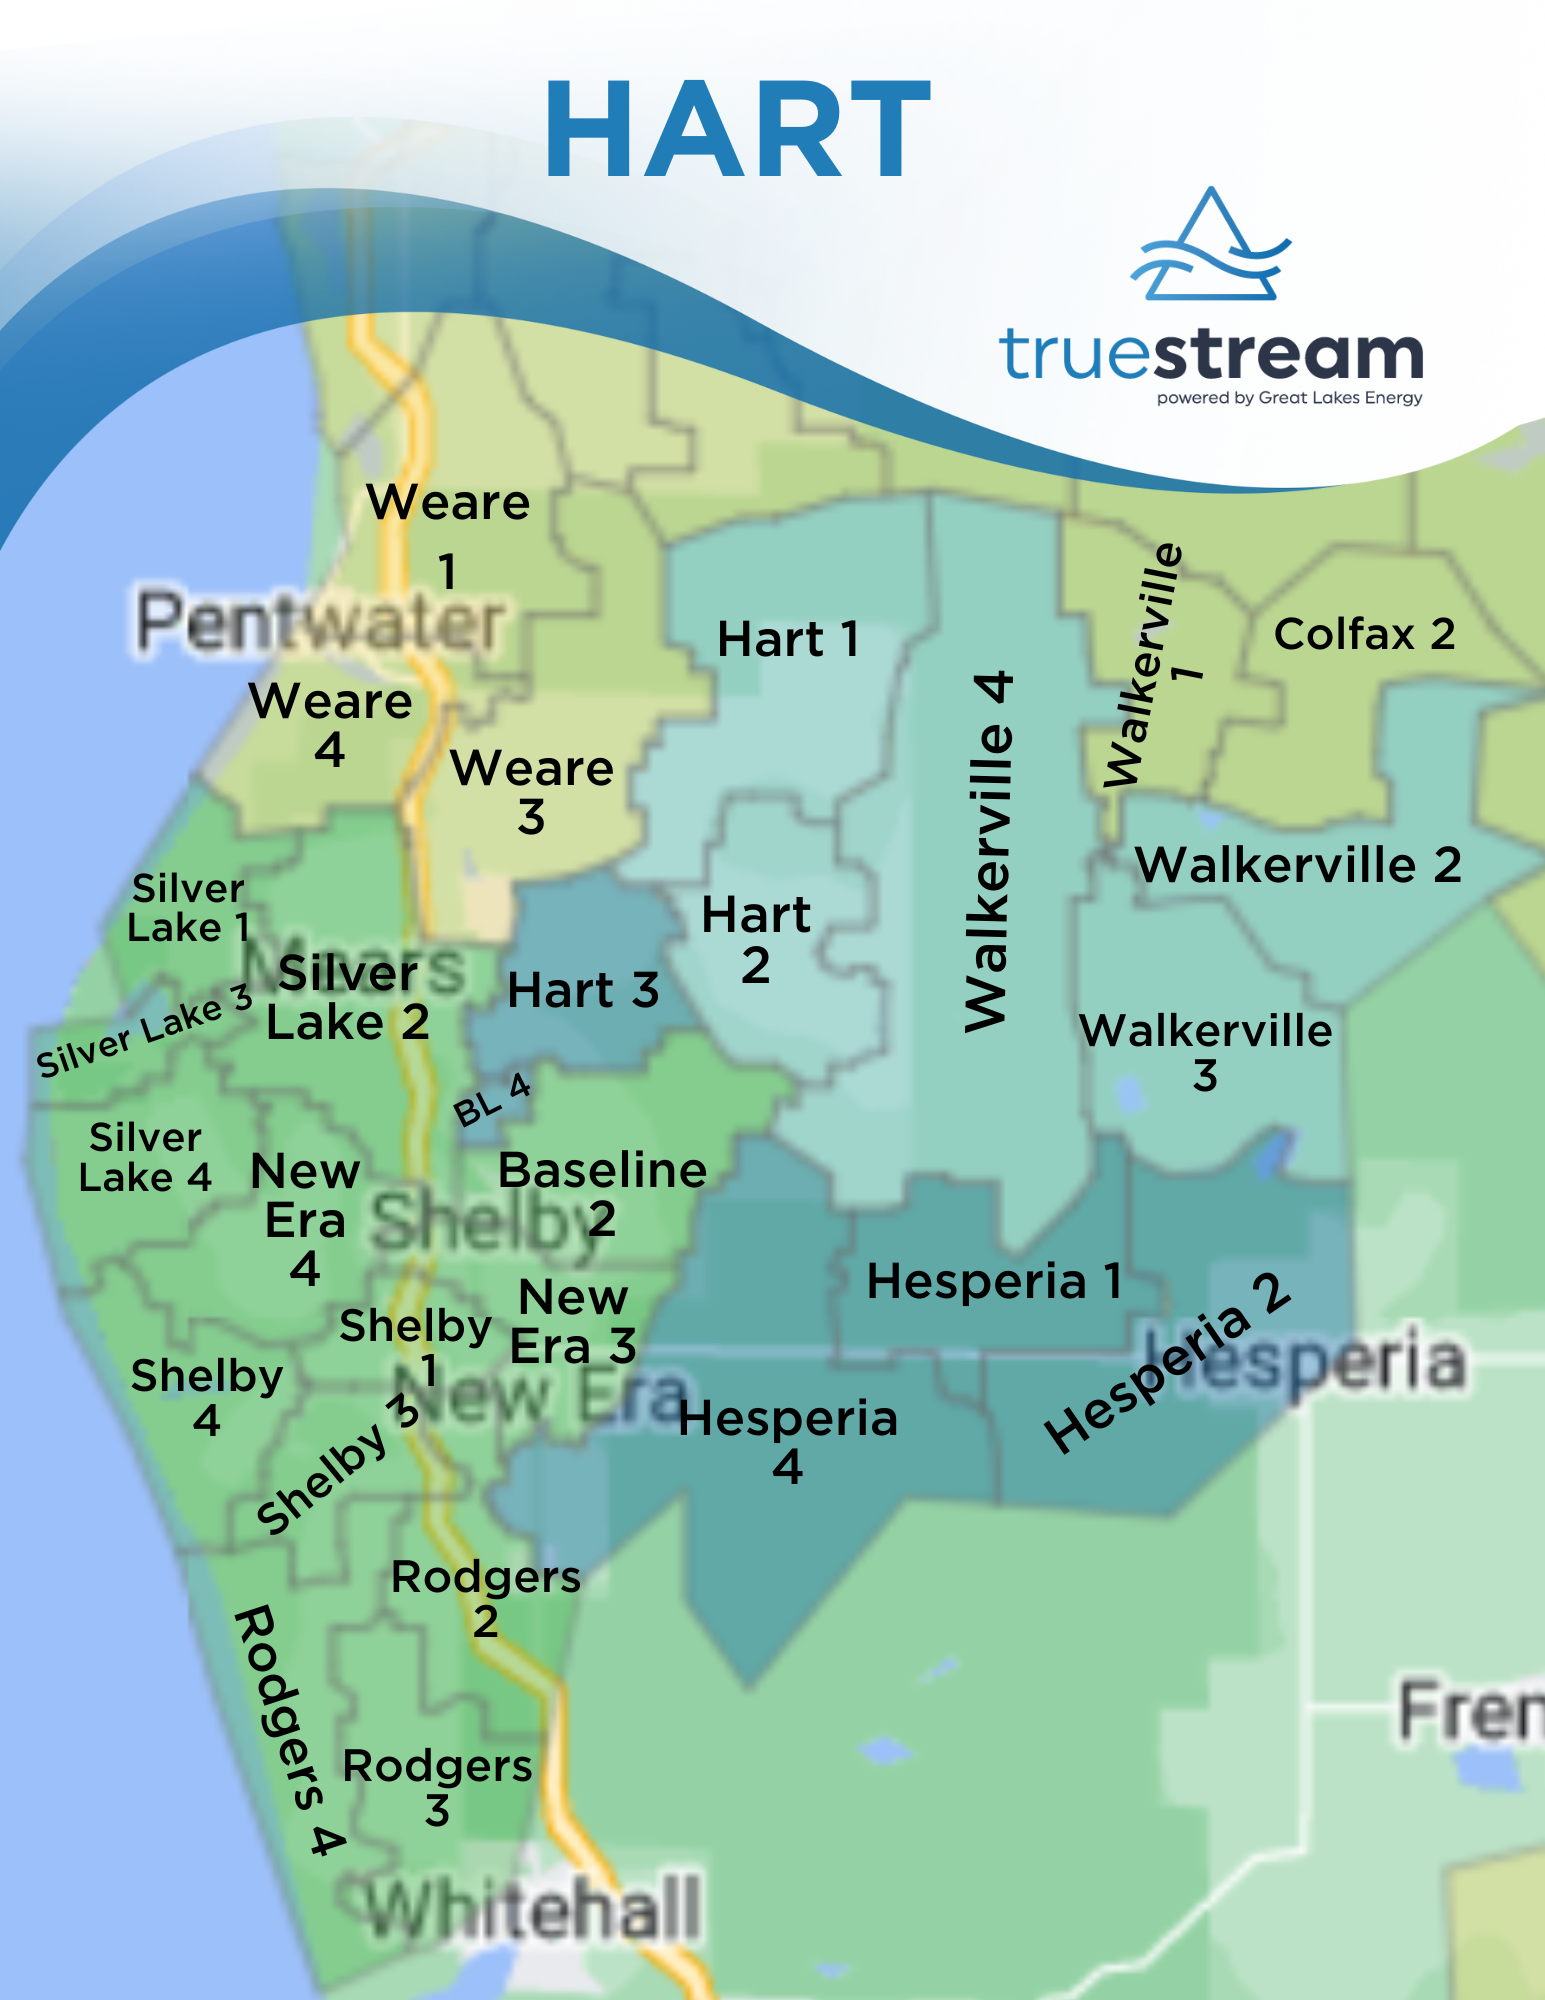 Hart Service Area Map